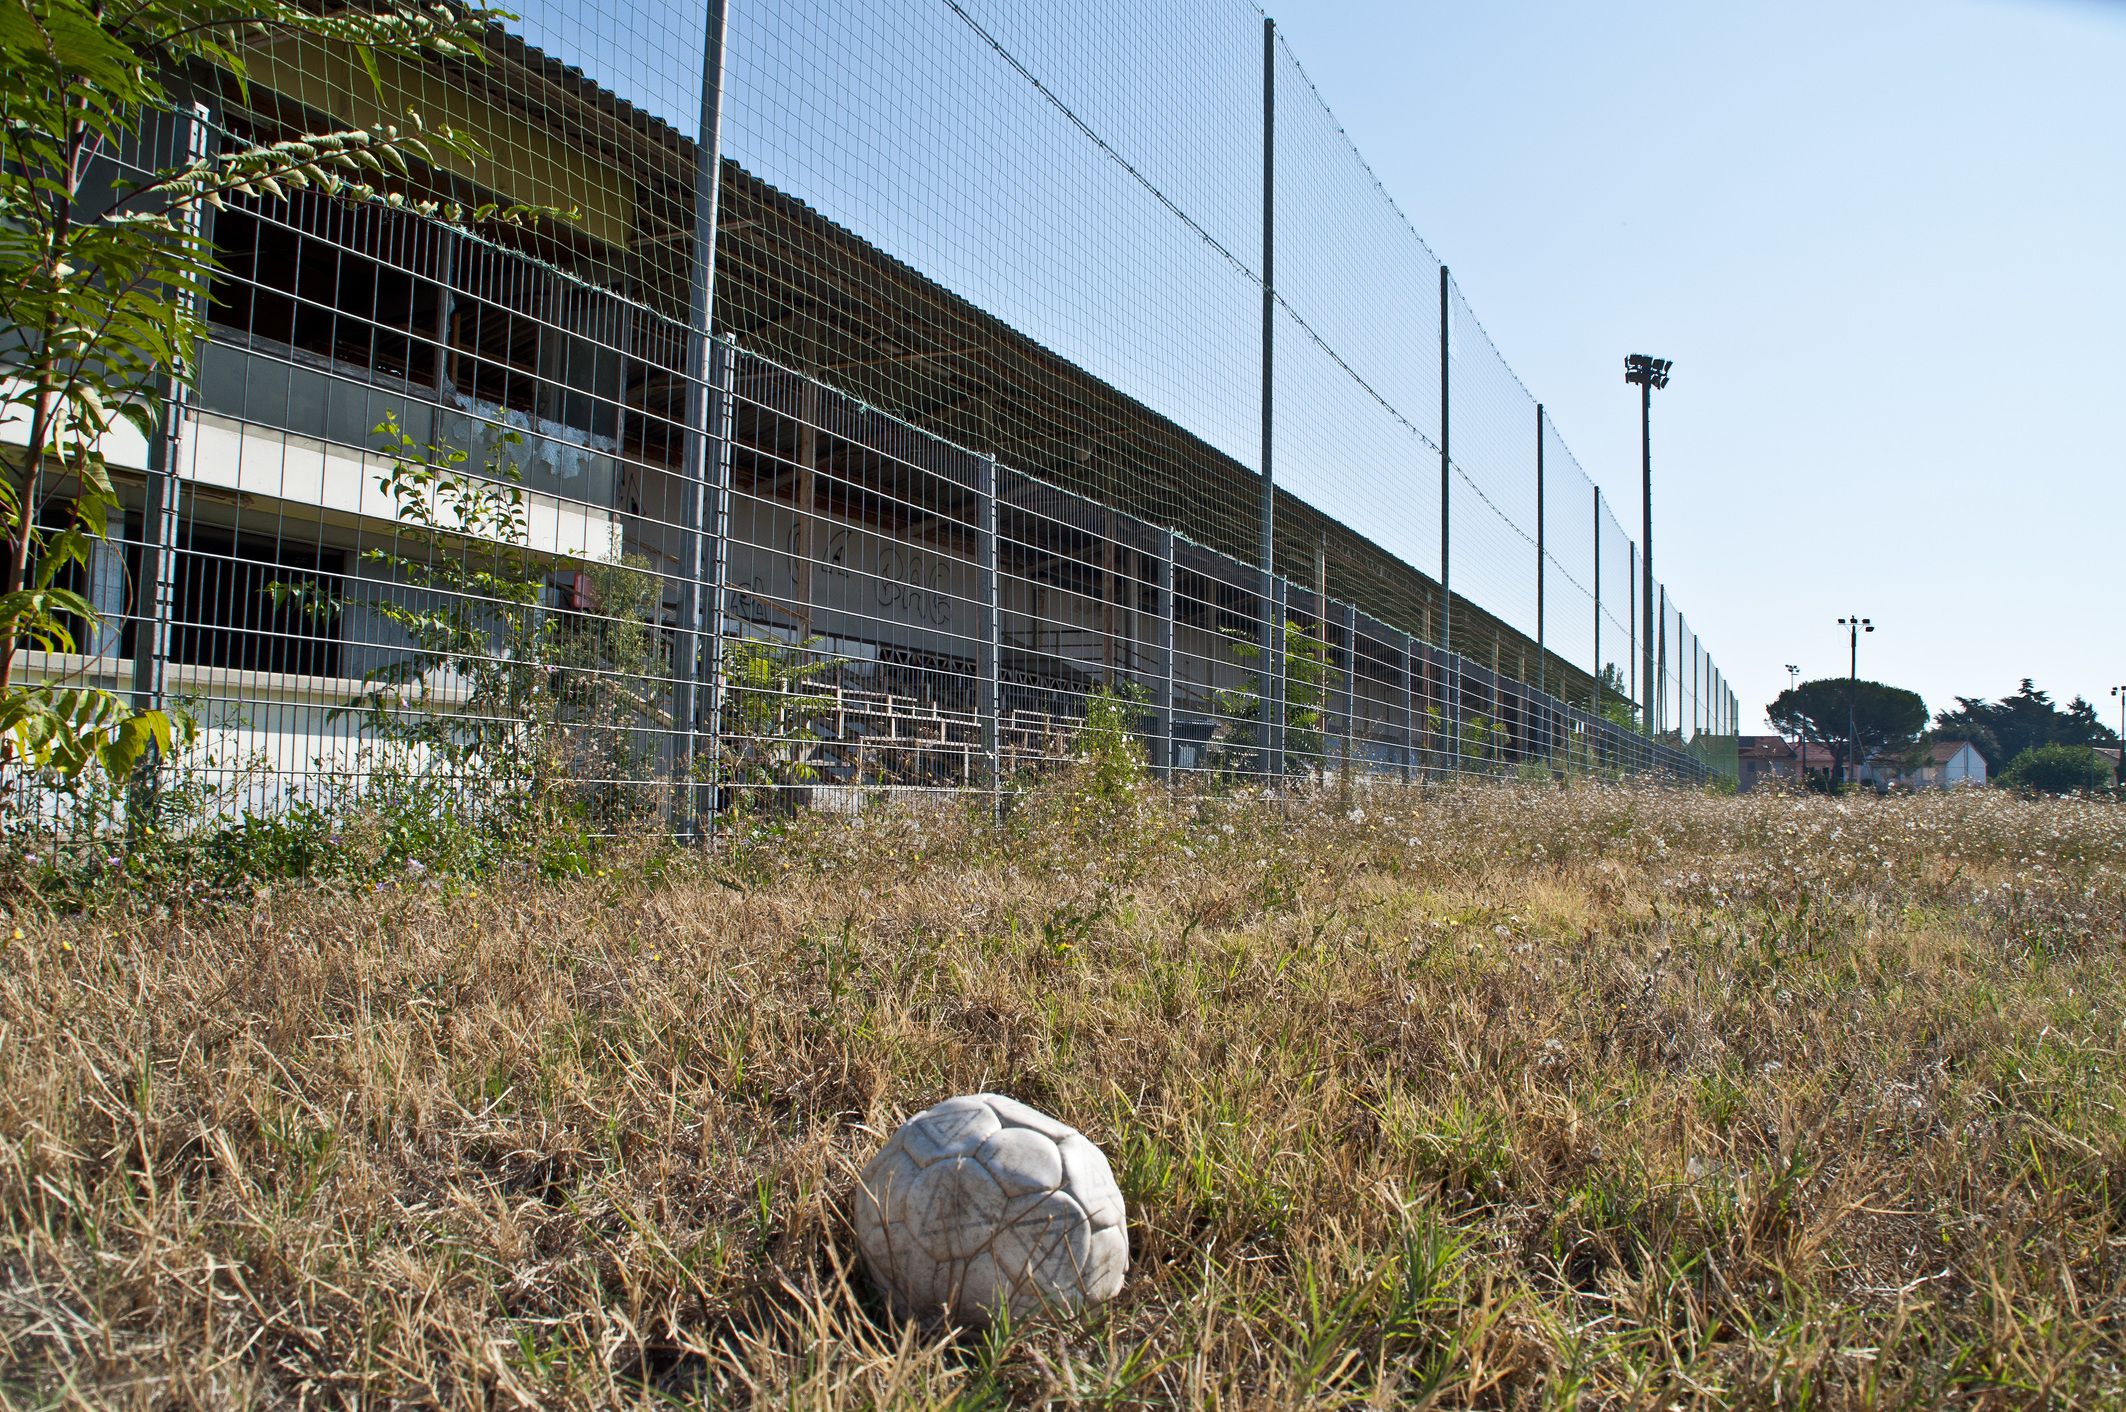 A labdarúgás 2010 óta megszűnt a településen. / Illusztráció: Northfoto